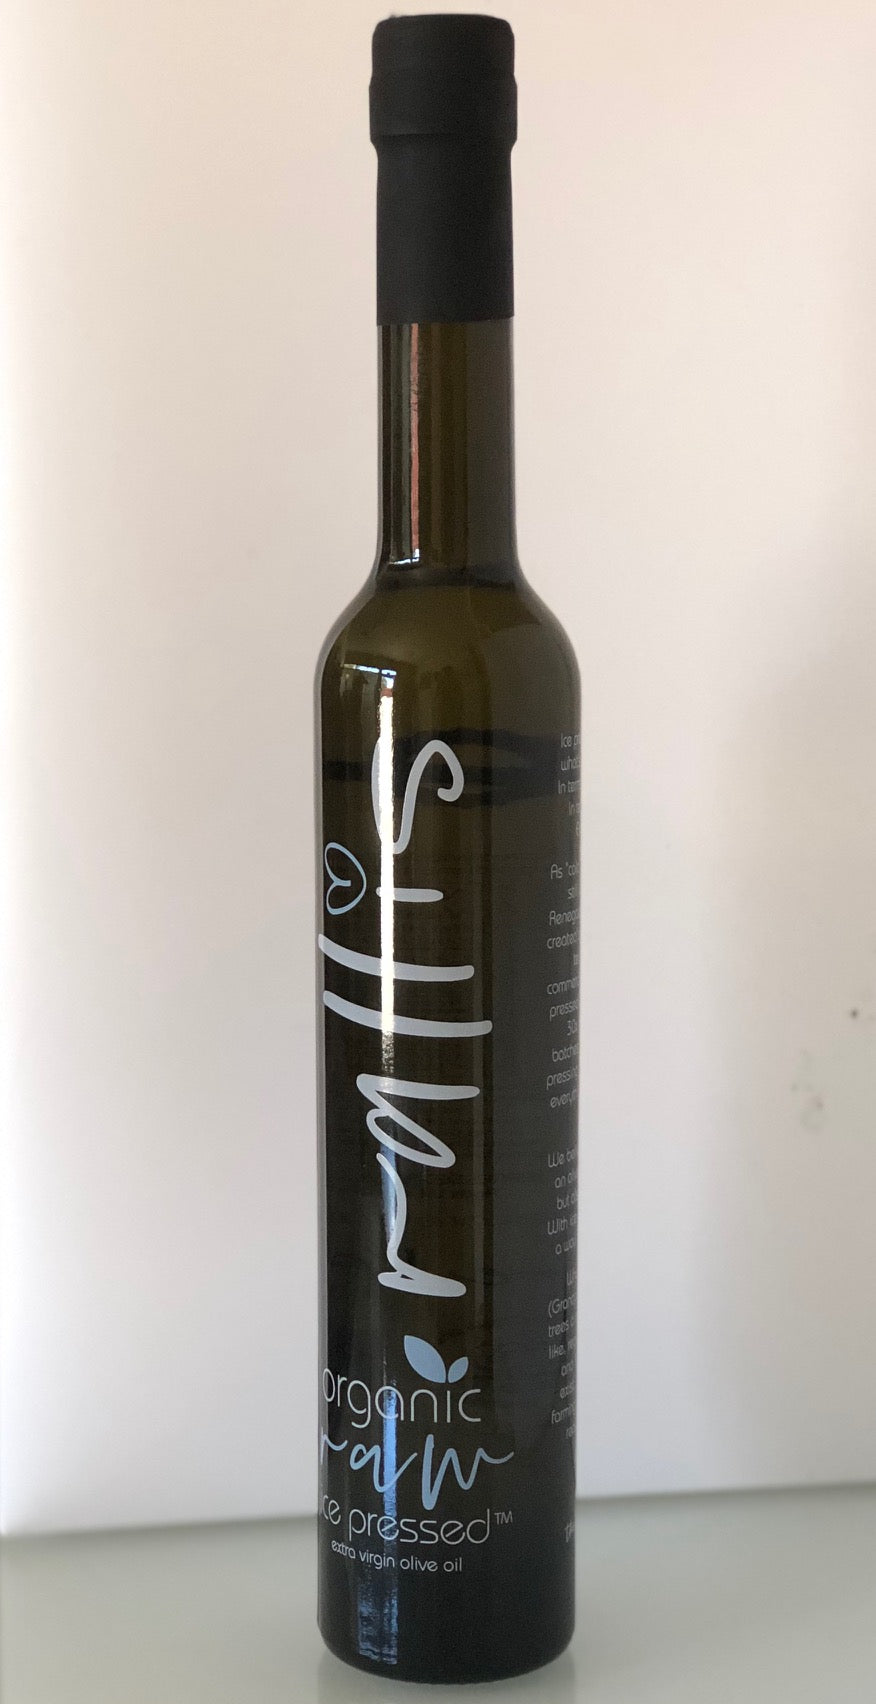 Rallis Organic RAW Icepressed Olive Oil - 375ml